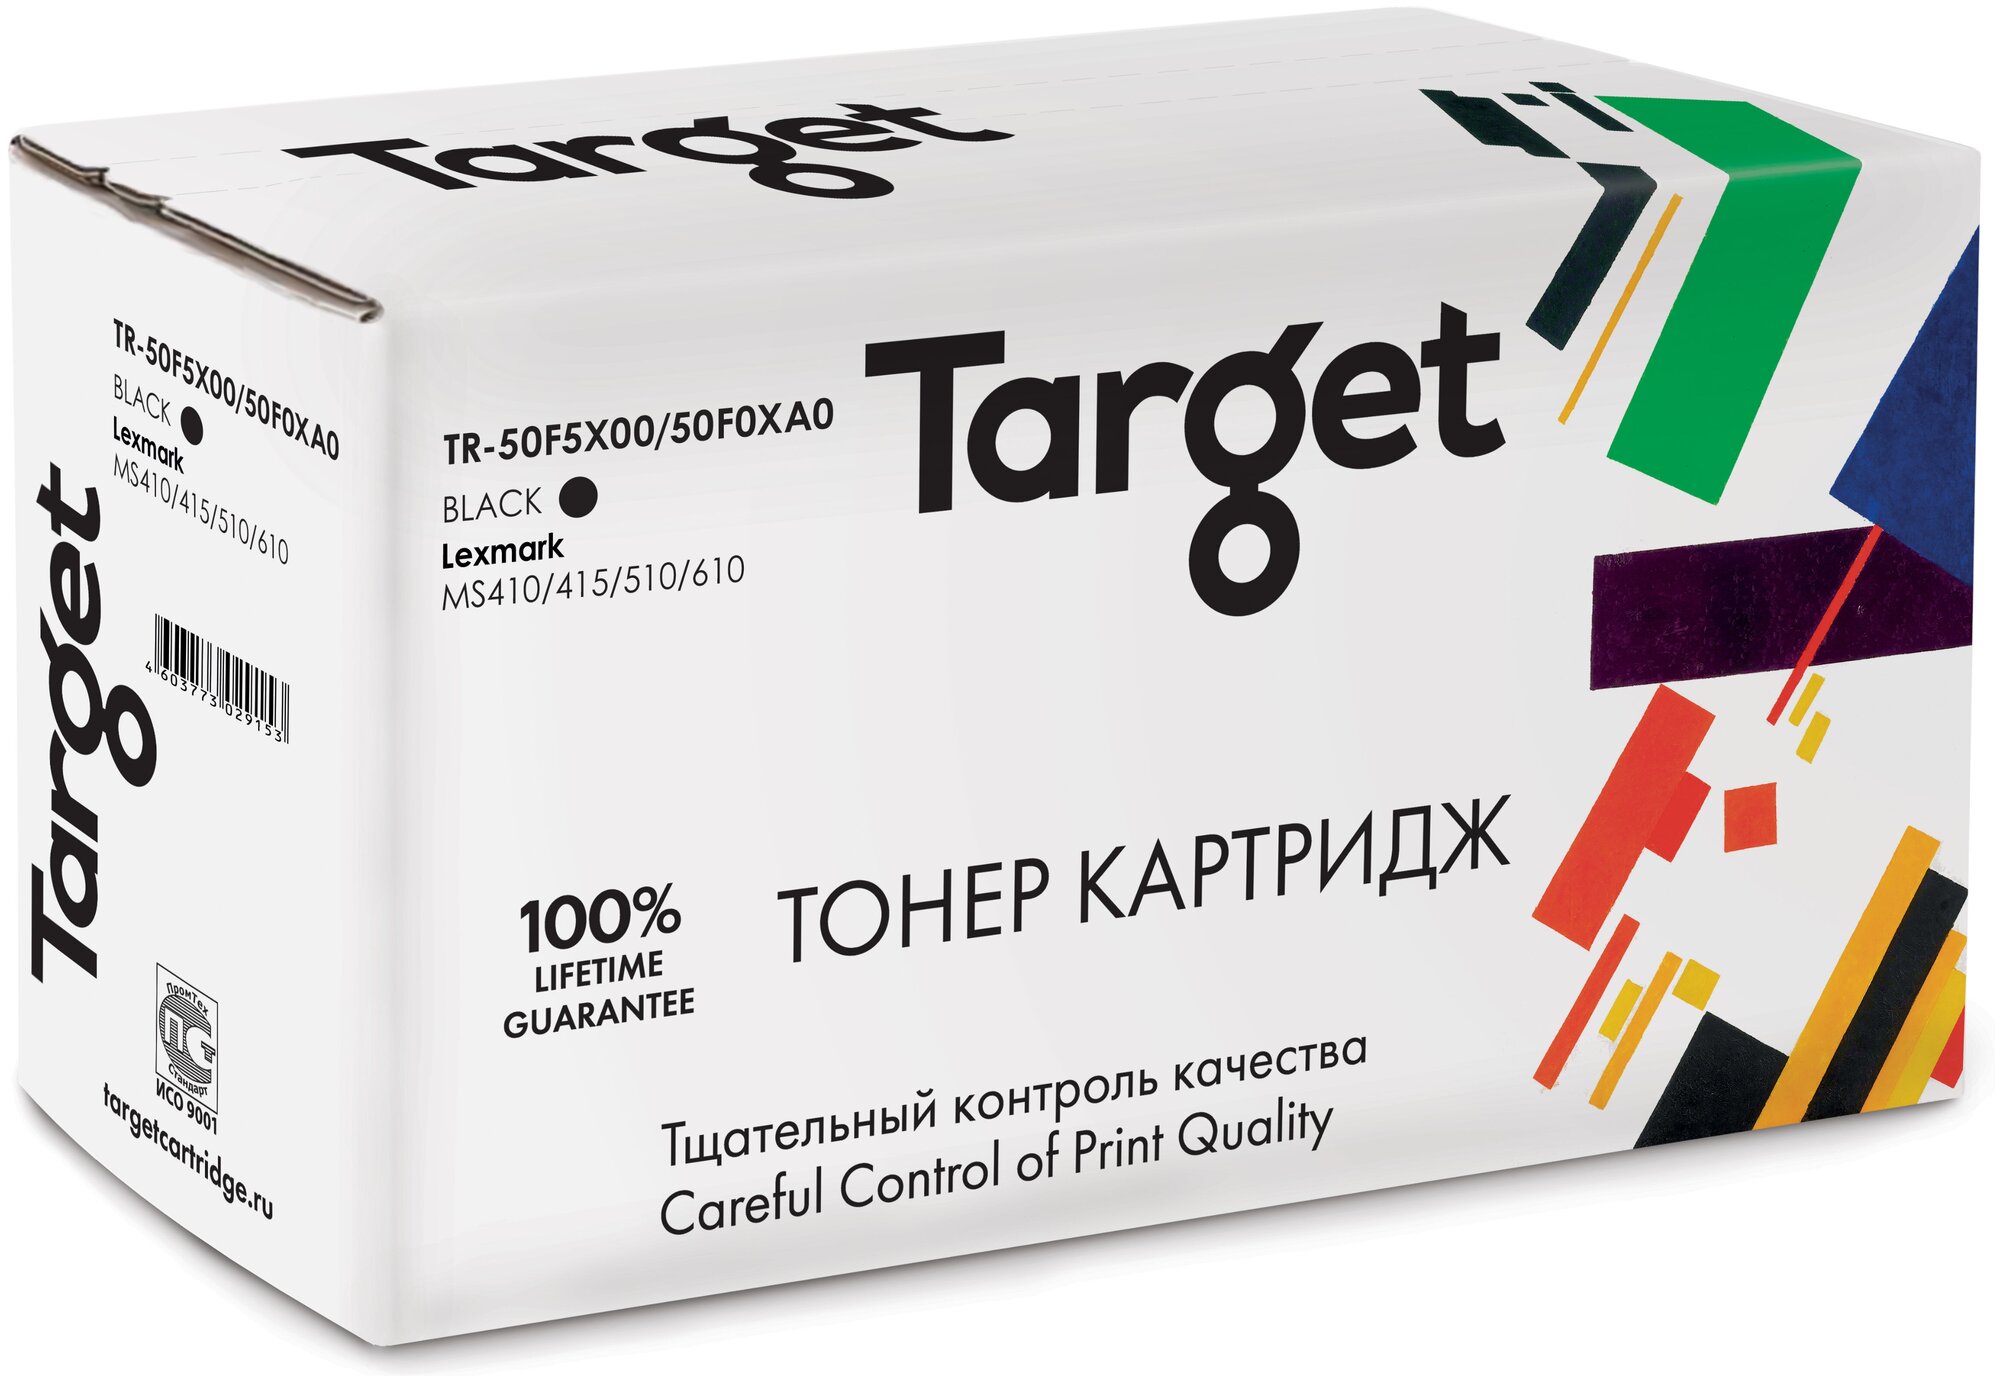 Тонер-картридж Target 50F5X00/50F0XA0, черный, для лазерного принтера, совместимый